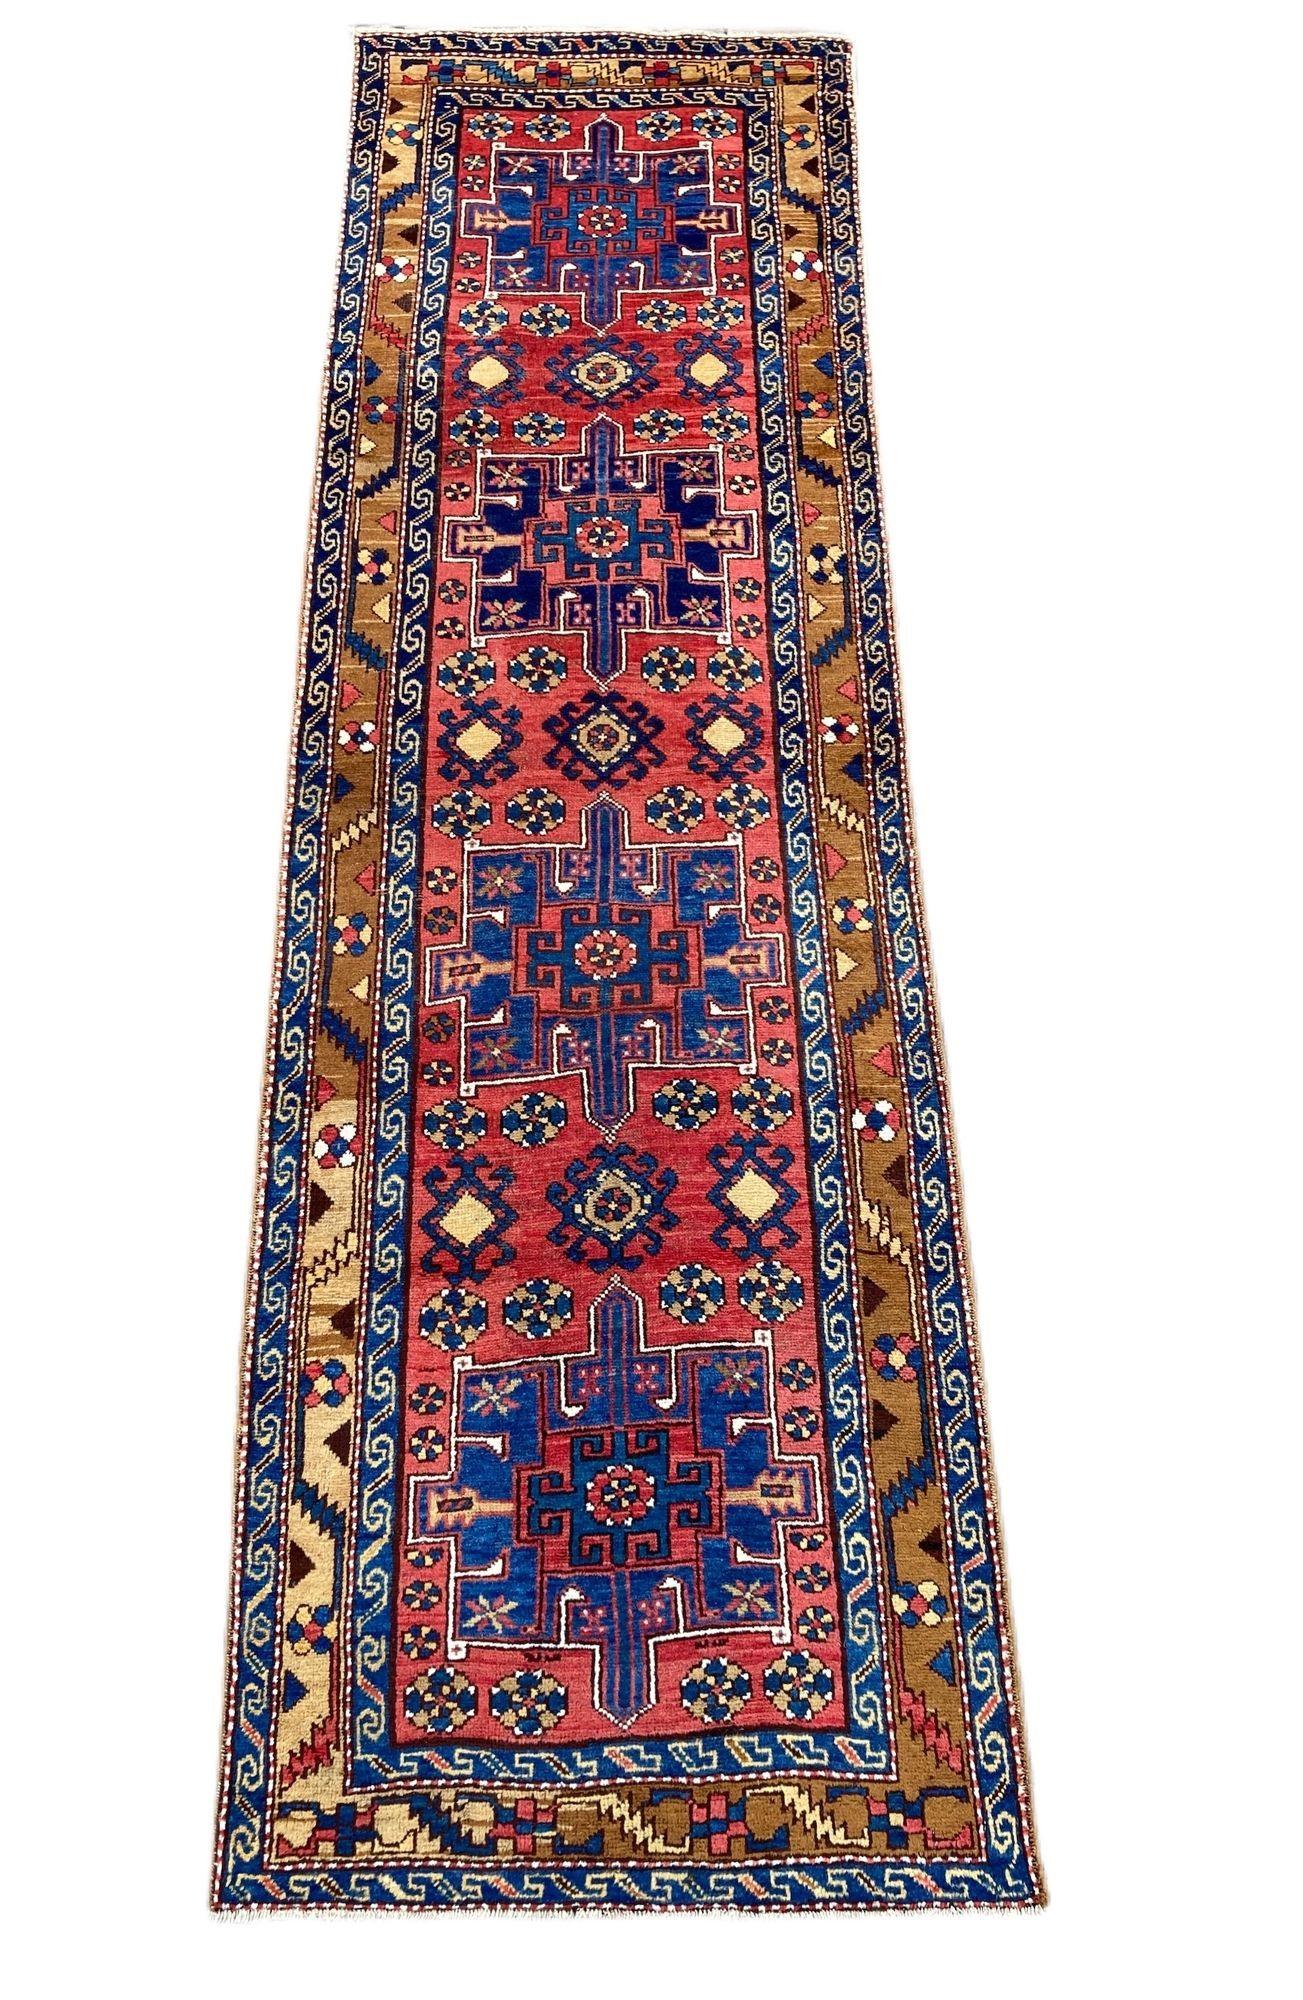 Ravissant chemin de table antique de Heriz, tissé à la main vers 1910, avec un motif géométrique à 4 médaillons sur un champ rouge terracotta et une bordure chameau inhabituelle. La qualité de la laine est excellente et les couleurs secondaires sont